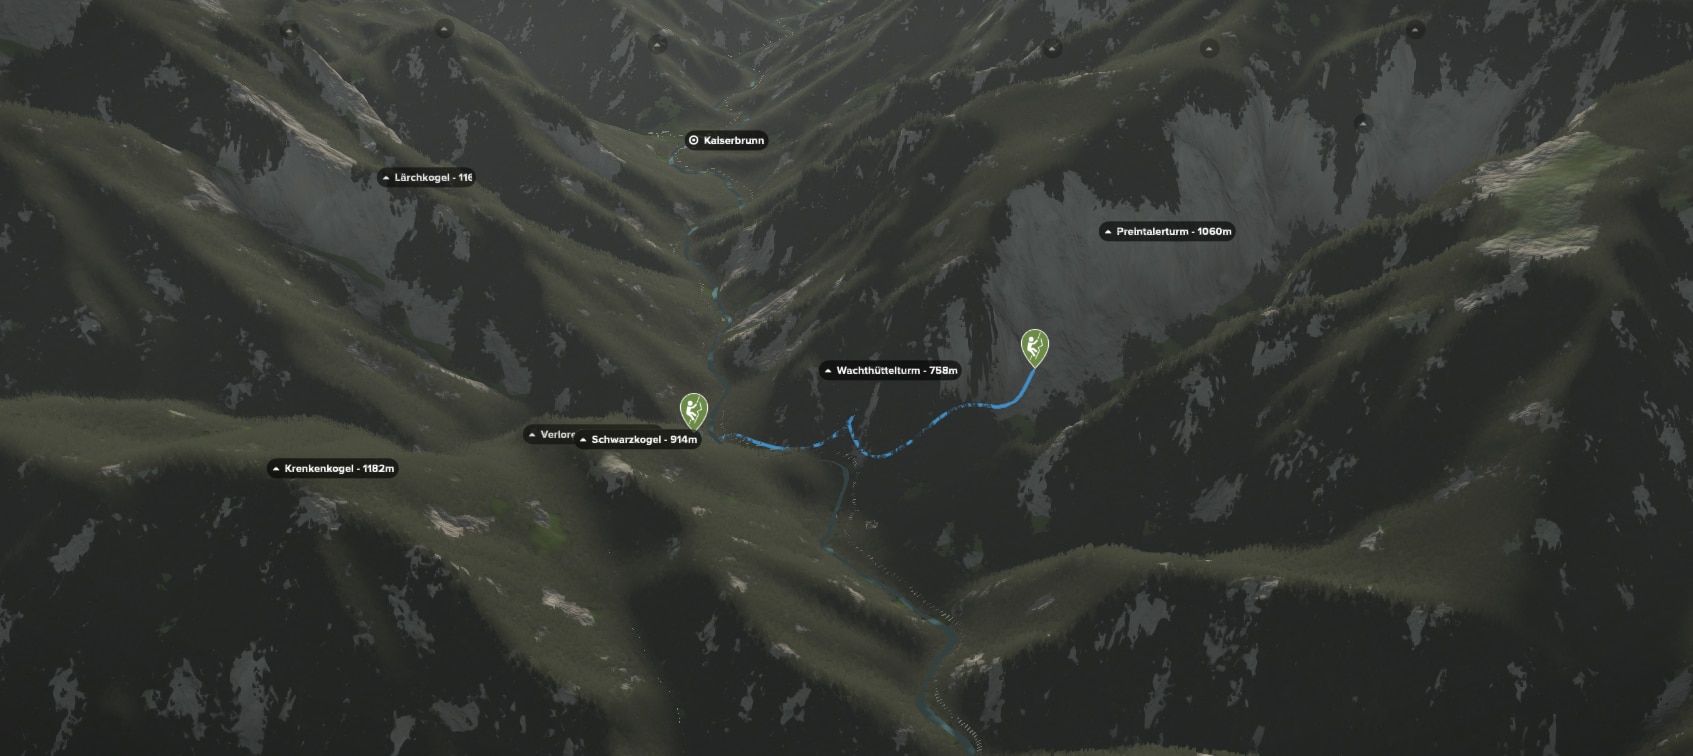 3D-Kartenausschnitt der Klettertour Blechmauerverschneidung